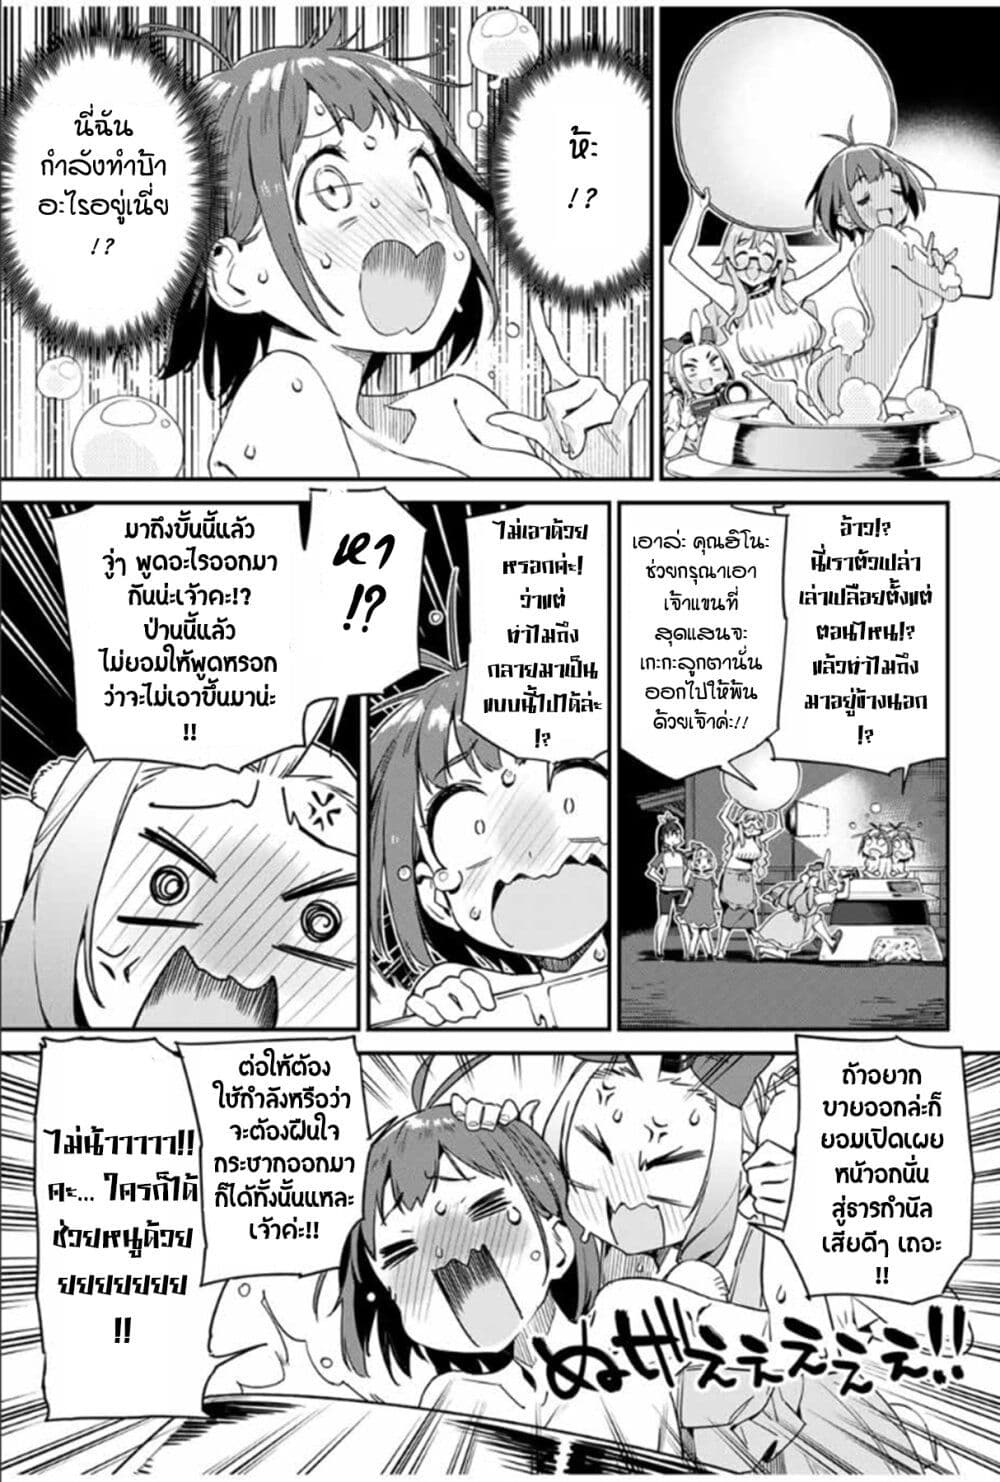 Youkai Izakaya non Bere ke ตอนที่ 14 (13)